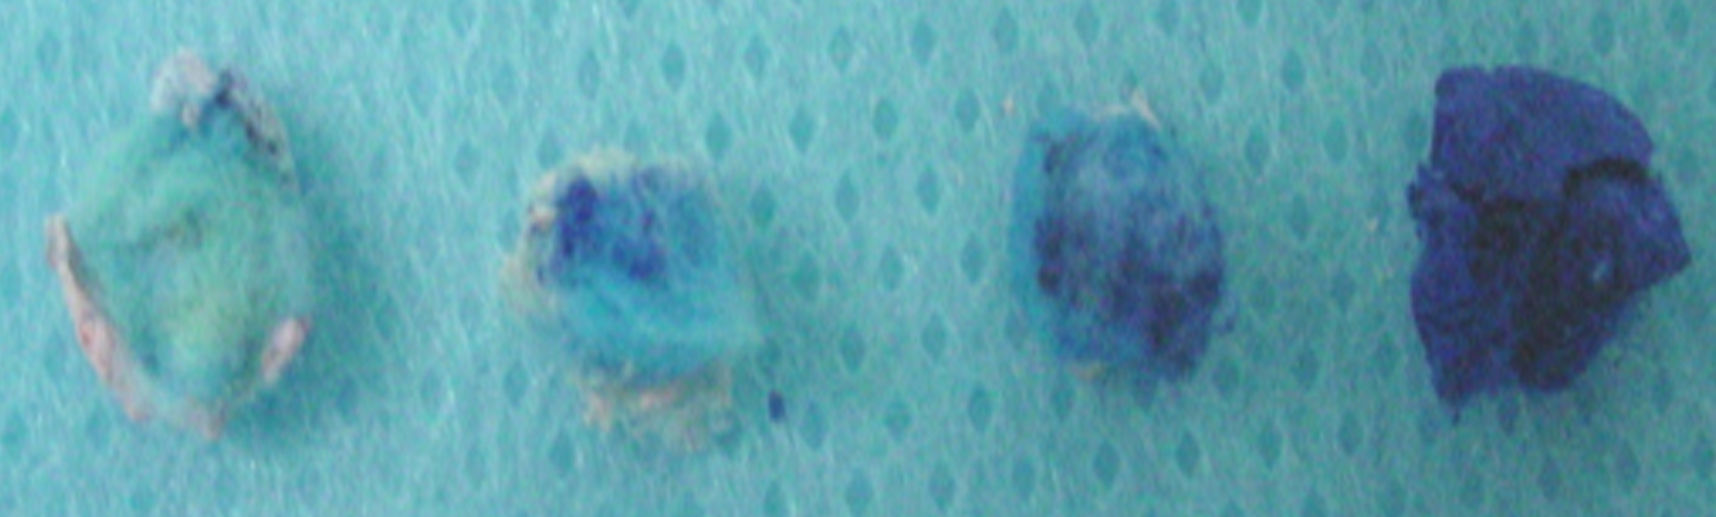 percha y cemento provisional y dejados inmersos en el colorante azul de metileno a 1%, en la estufa en una temperatura de 37º por 24 horas.